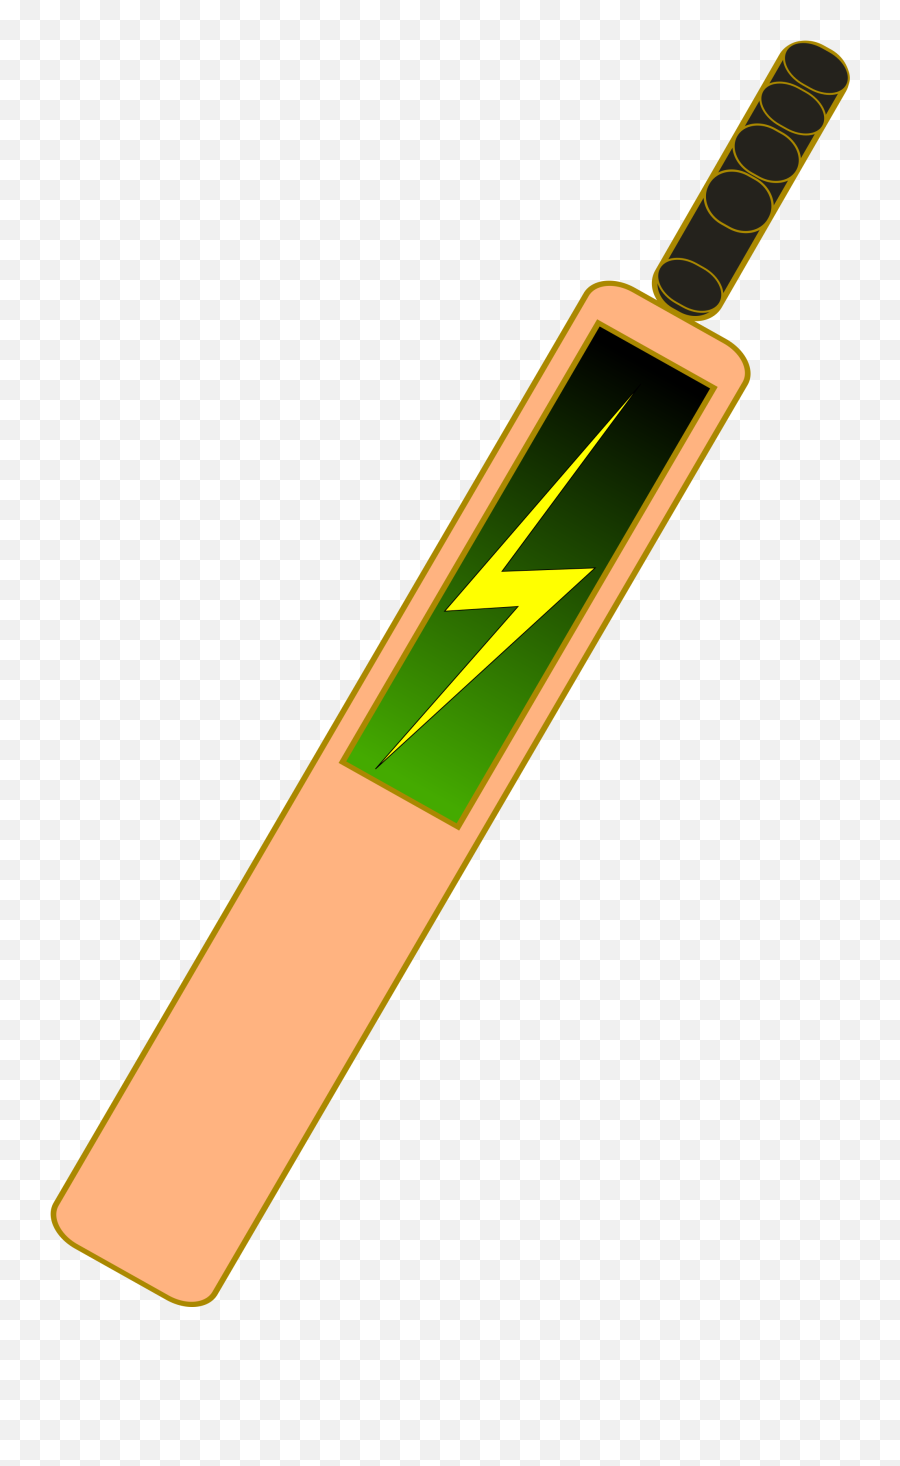 Clipart Of Cricket Bat - Cricket Bat Images Clip Art Png,Cricket Bat Png